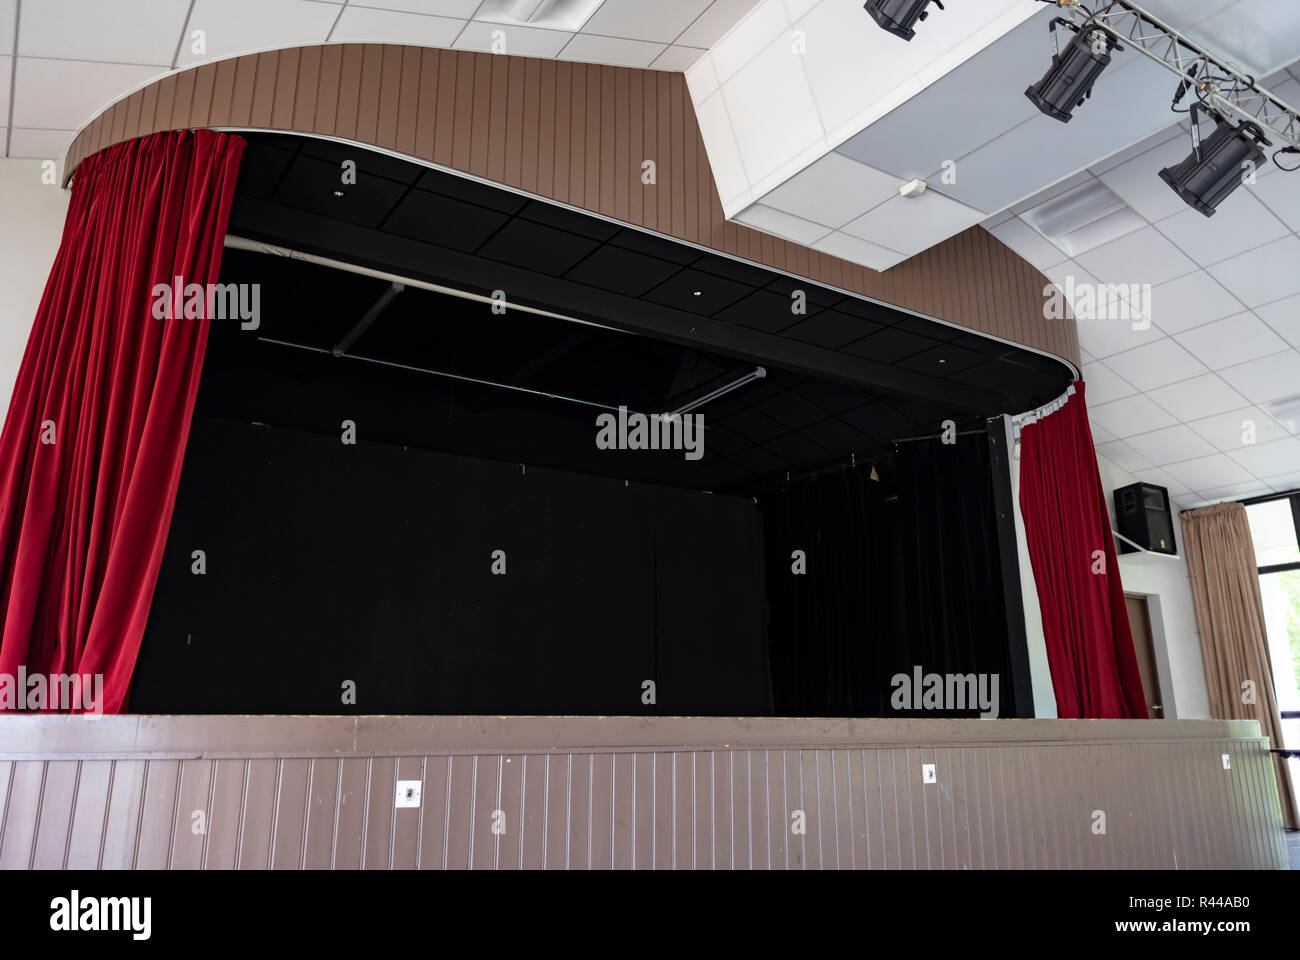 Weite Einstellung auf ein Innen schwarze Bühne mit roten Vorhängen und Scheinwerfer an der Decke hing, mit Holztäfelung umgeben. Stockfoto